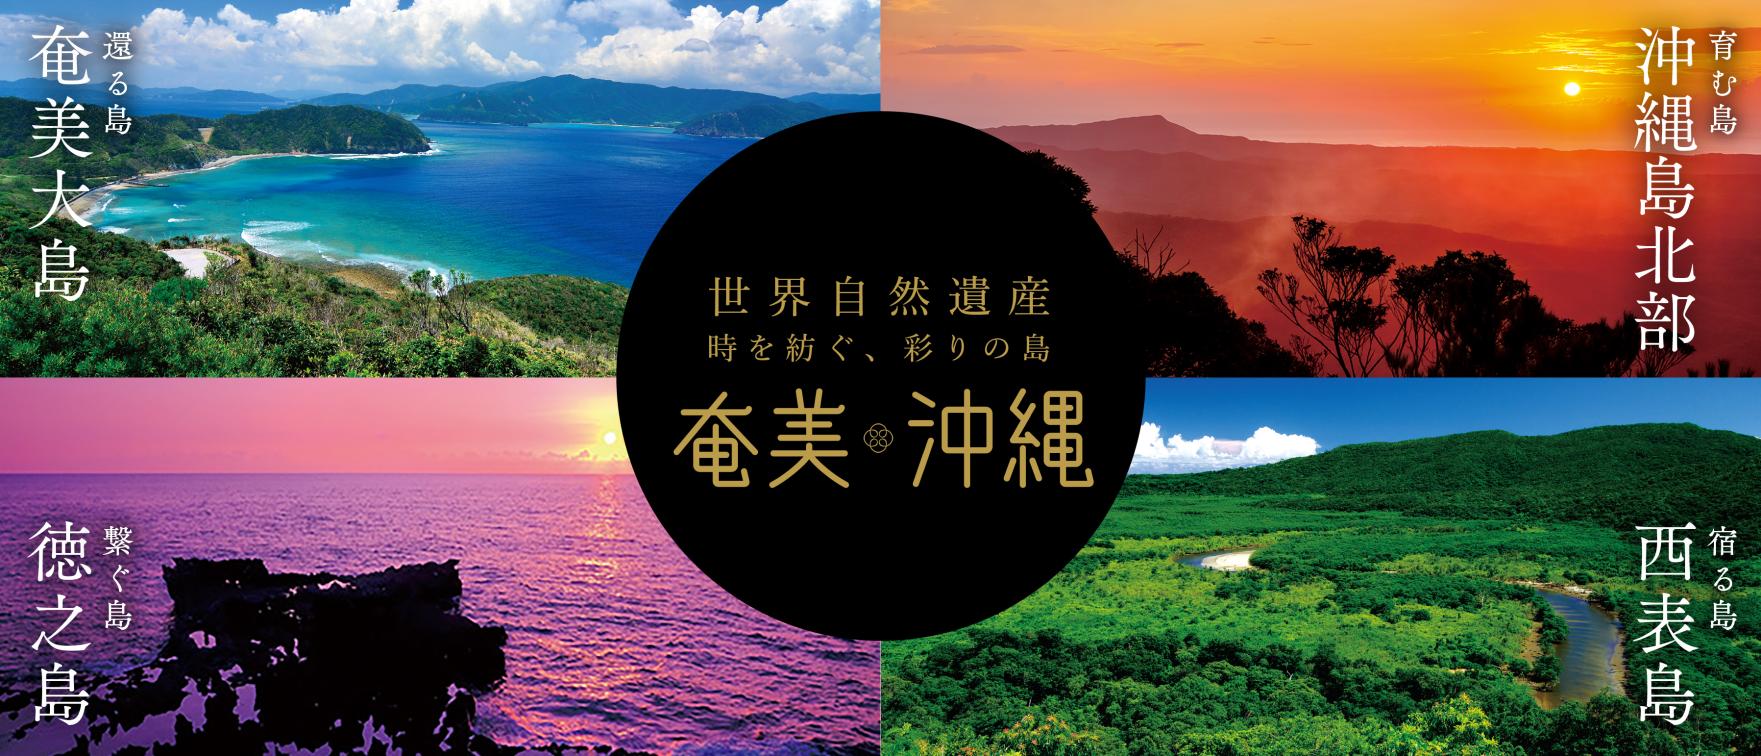 4つのエリアで魅力を発見!奄美・沖縄世界自然遺産を旅する-1